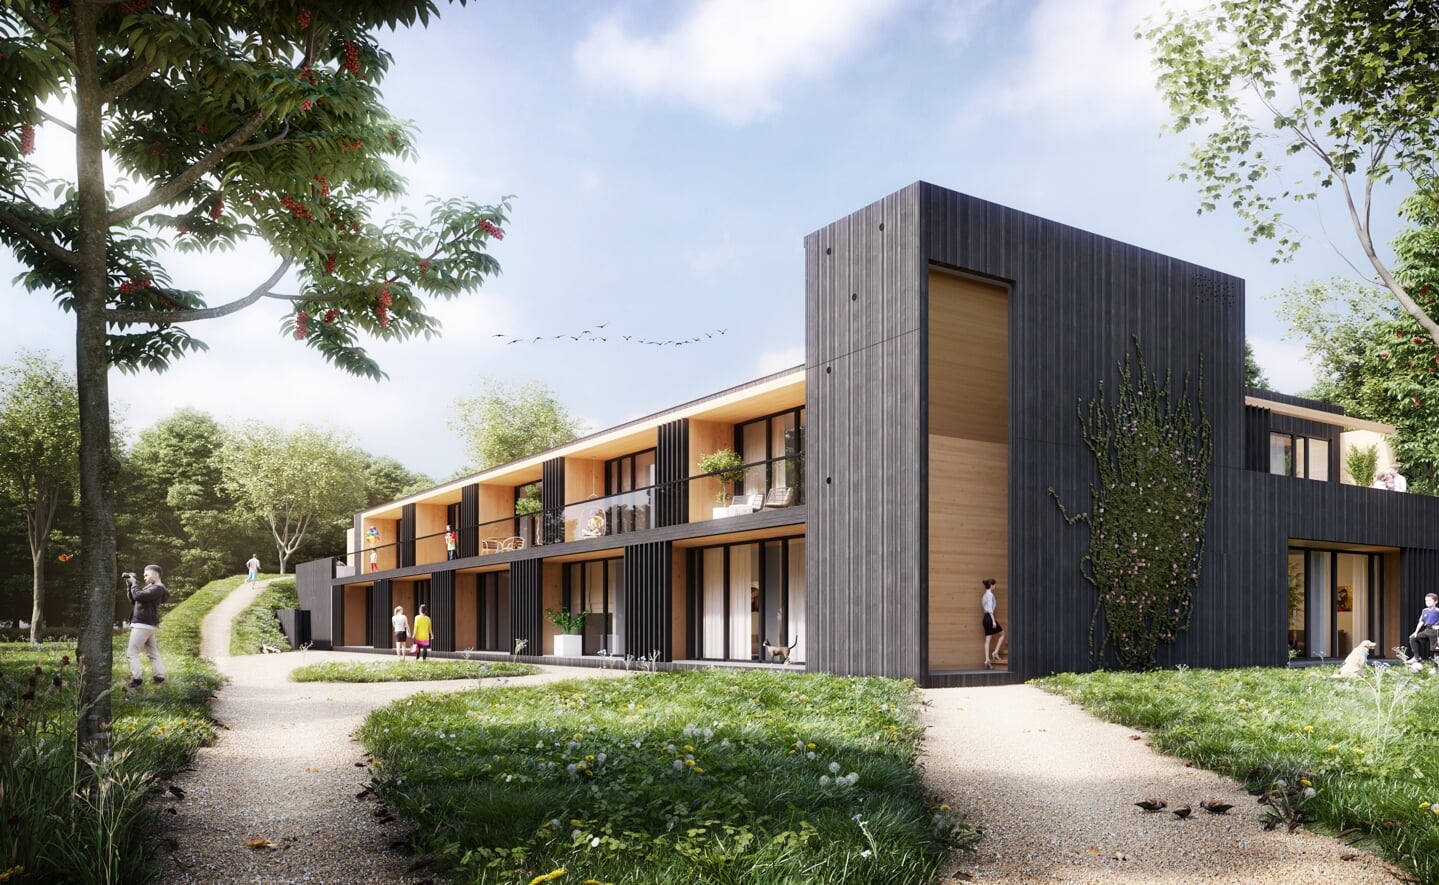 Impressie van het appartementencomplex bouwbedrijf Heijmans met Faam Architects uit Eindhoven ontwikkelde voor de Boxtelse woonstichting. De 22 duurzame en sociale huurwoningen worden gebouwd aan de straat Munselse Hoeve, op het terrein van De Kleine Aarde in Boxtel. (Afbeelding: eigen collectie). 